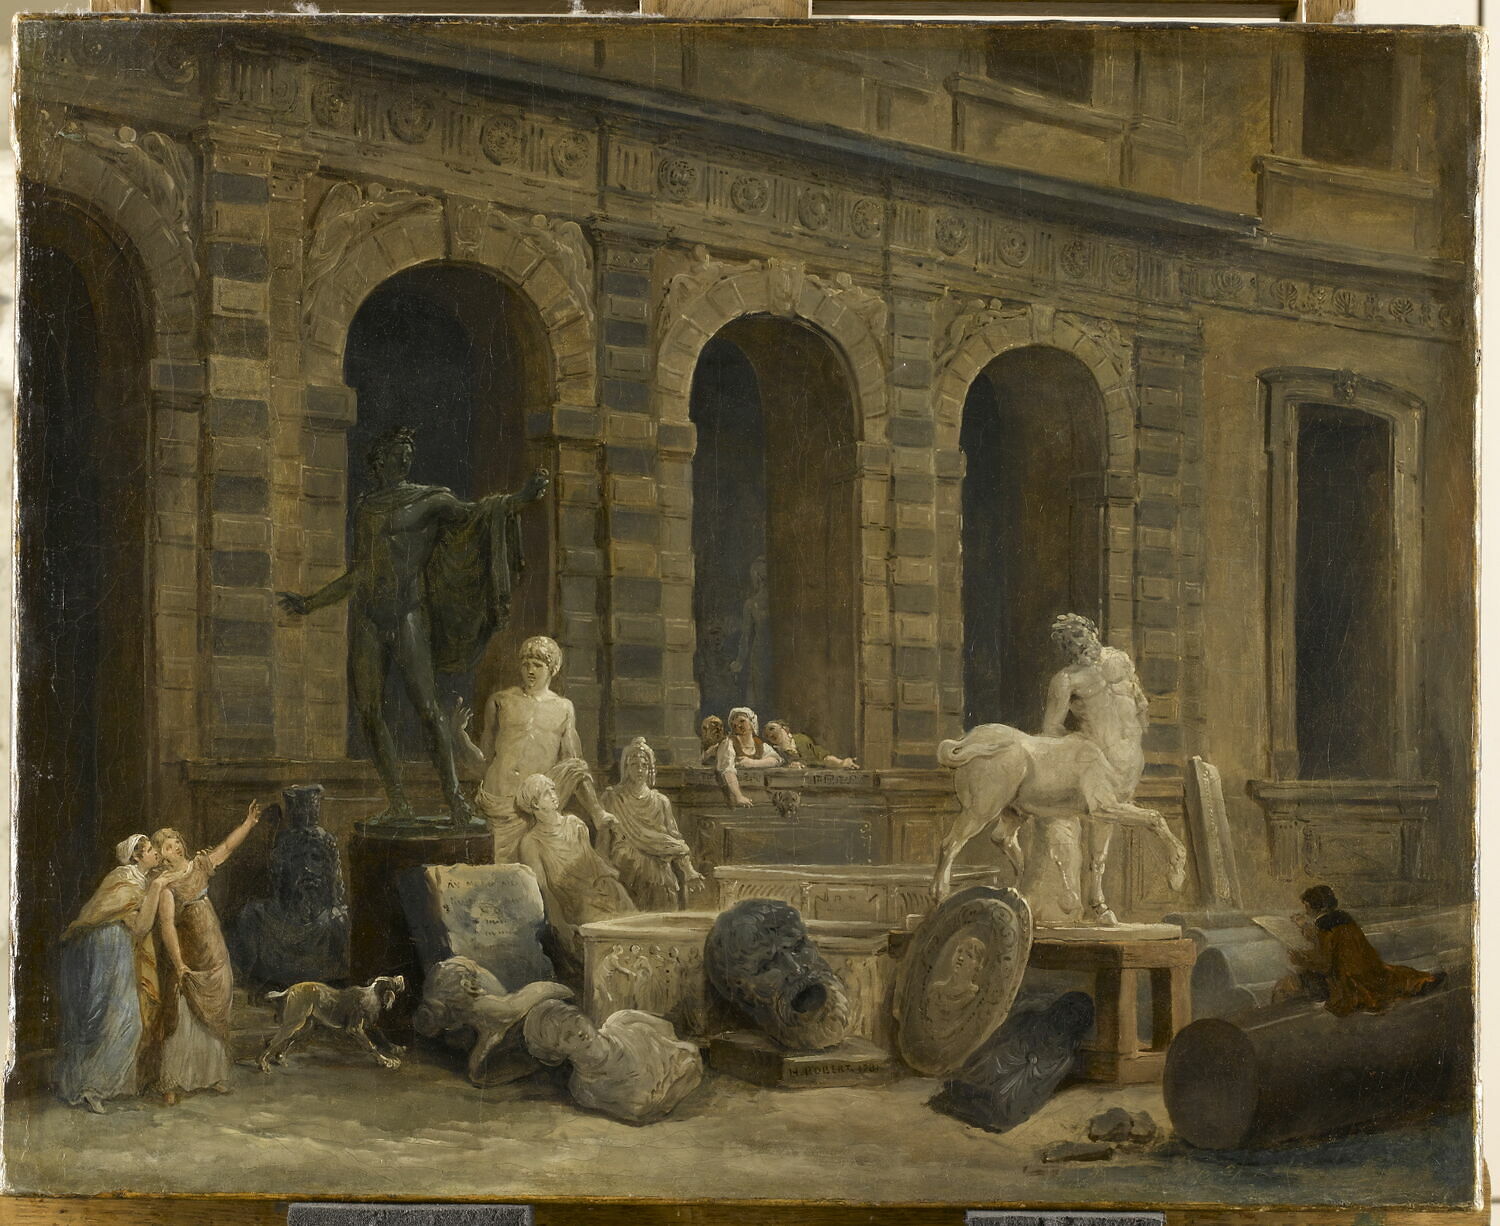 Hubert Robert, Le dessinateur d’antiques devant la petite galerie du
Louvre. Le tableau montre notamment
le centaure Furietti provenant des collections de Grimod d’Orsay.